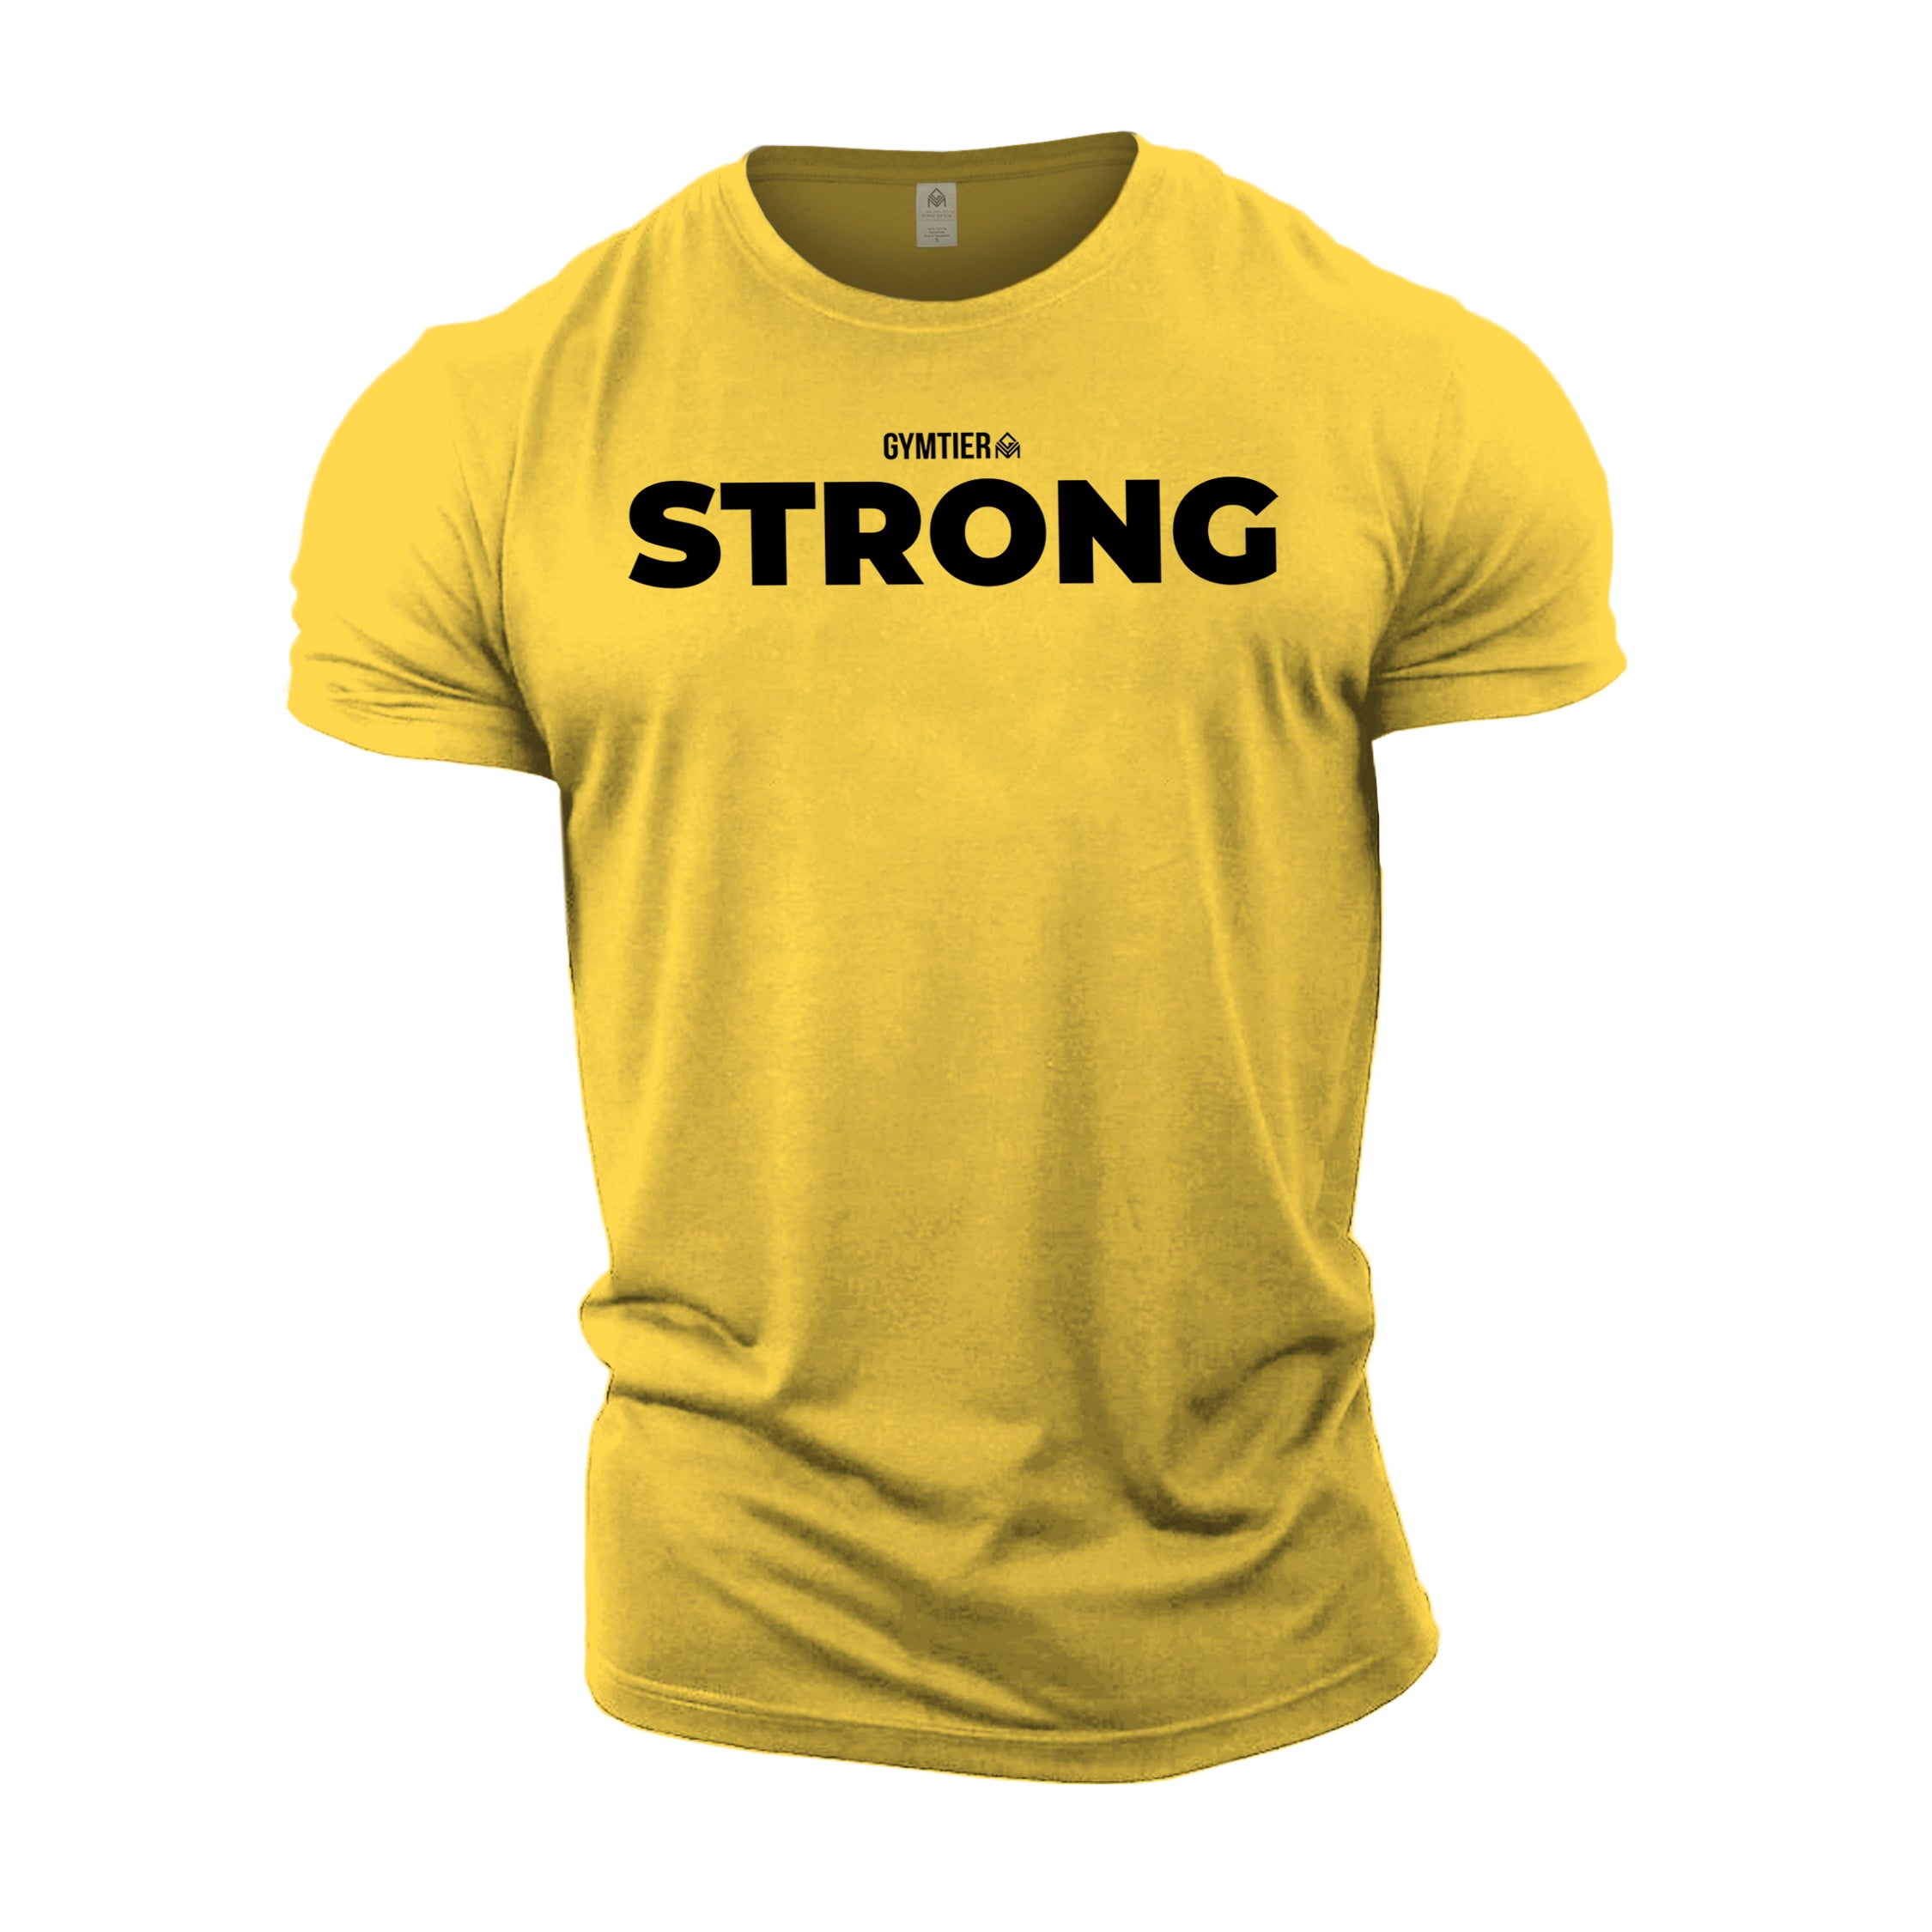 GYMTIER Strong T-Shirt